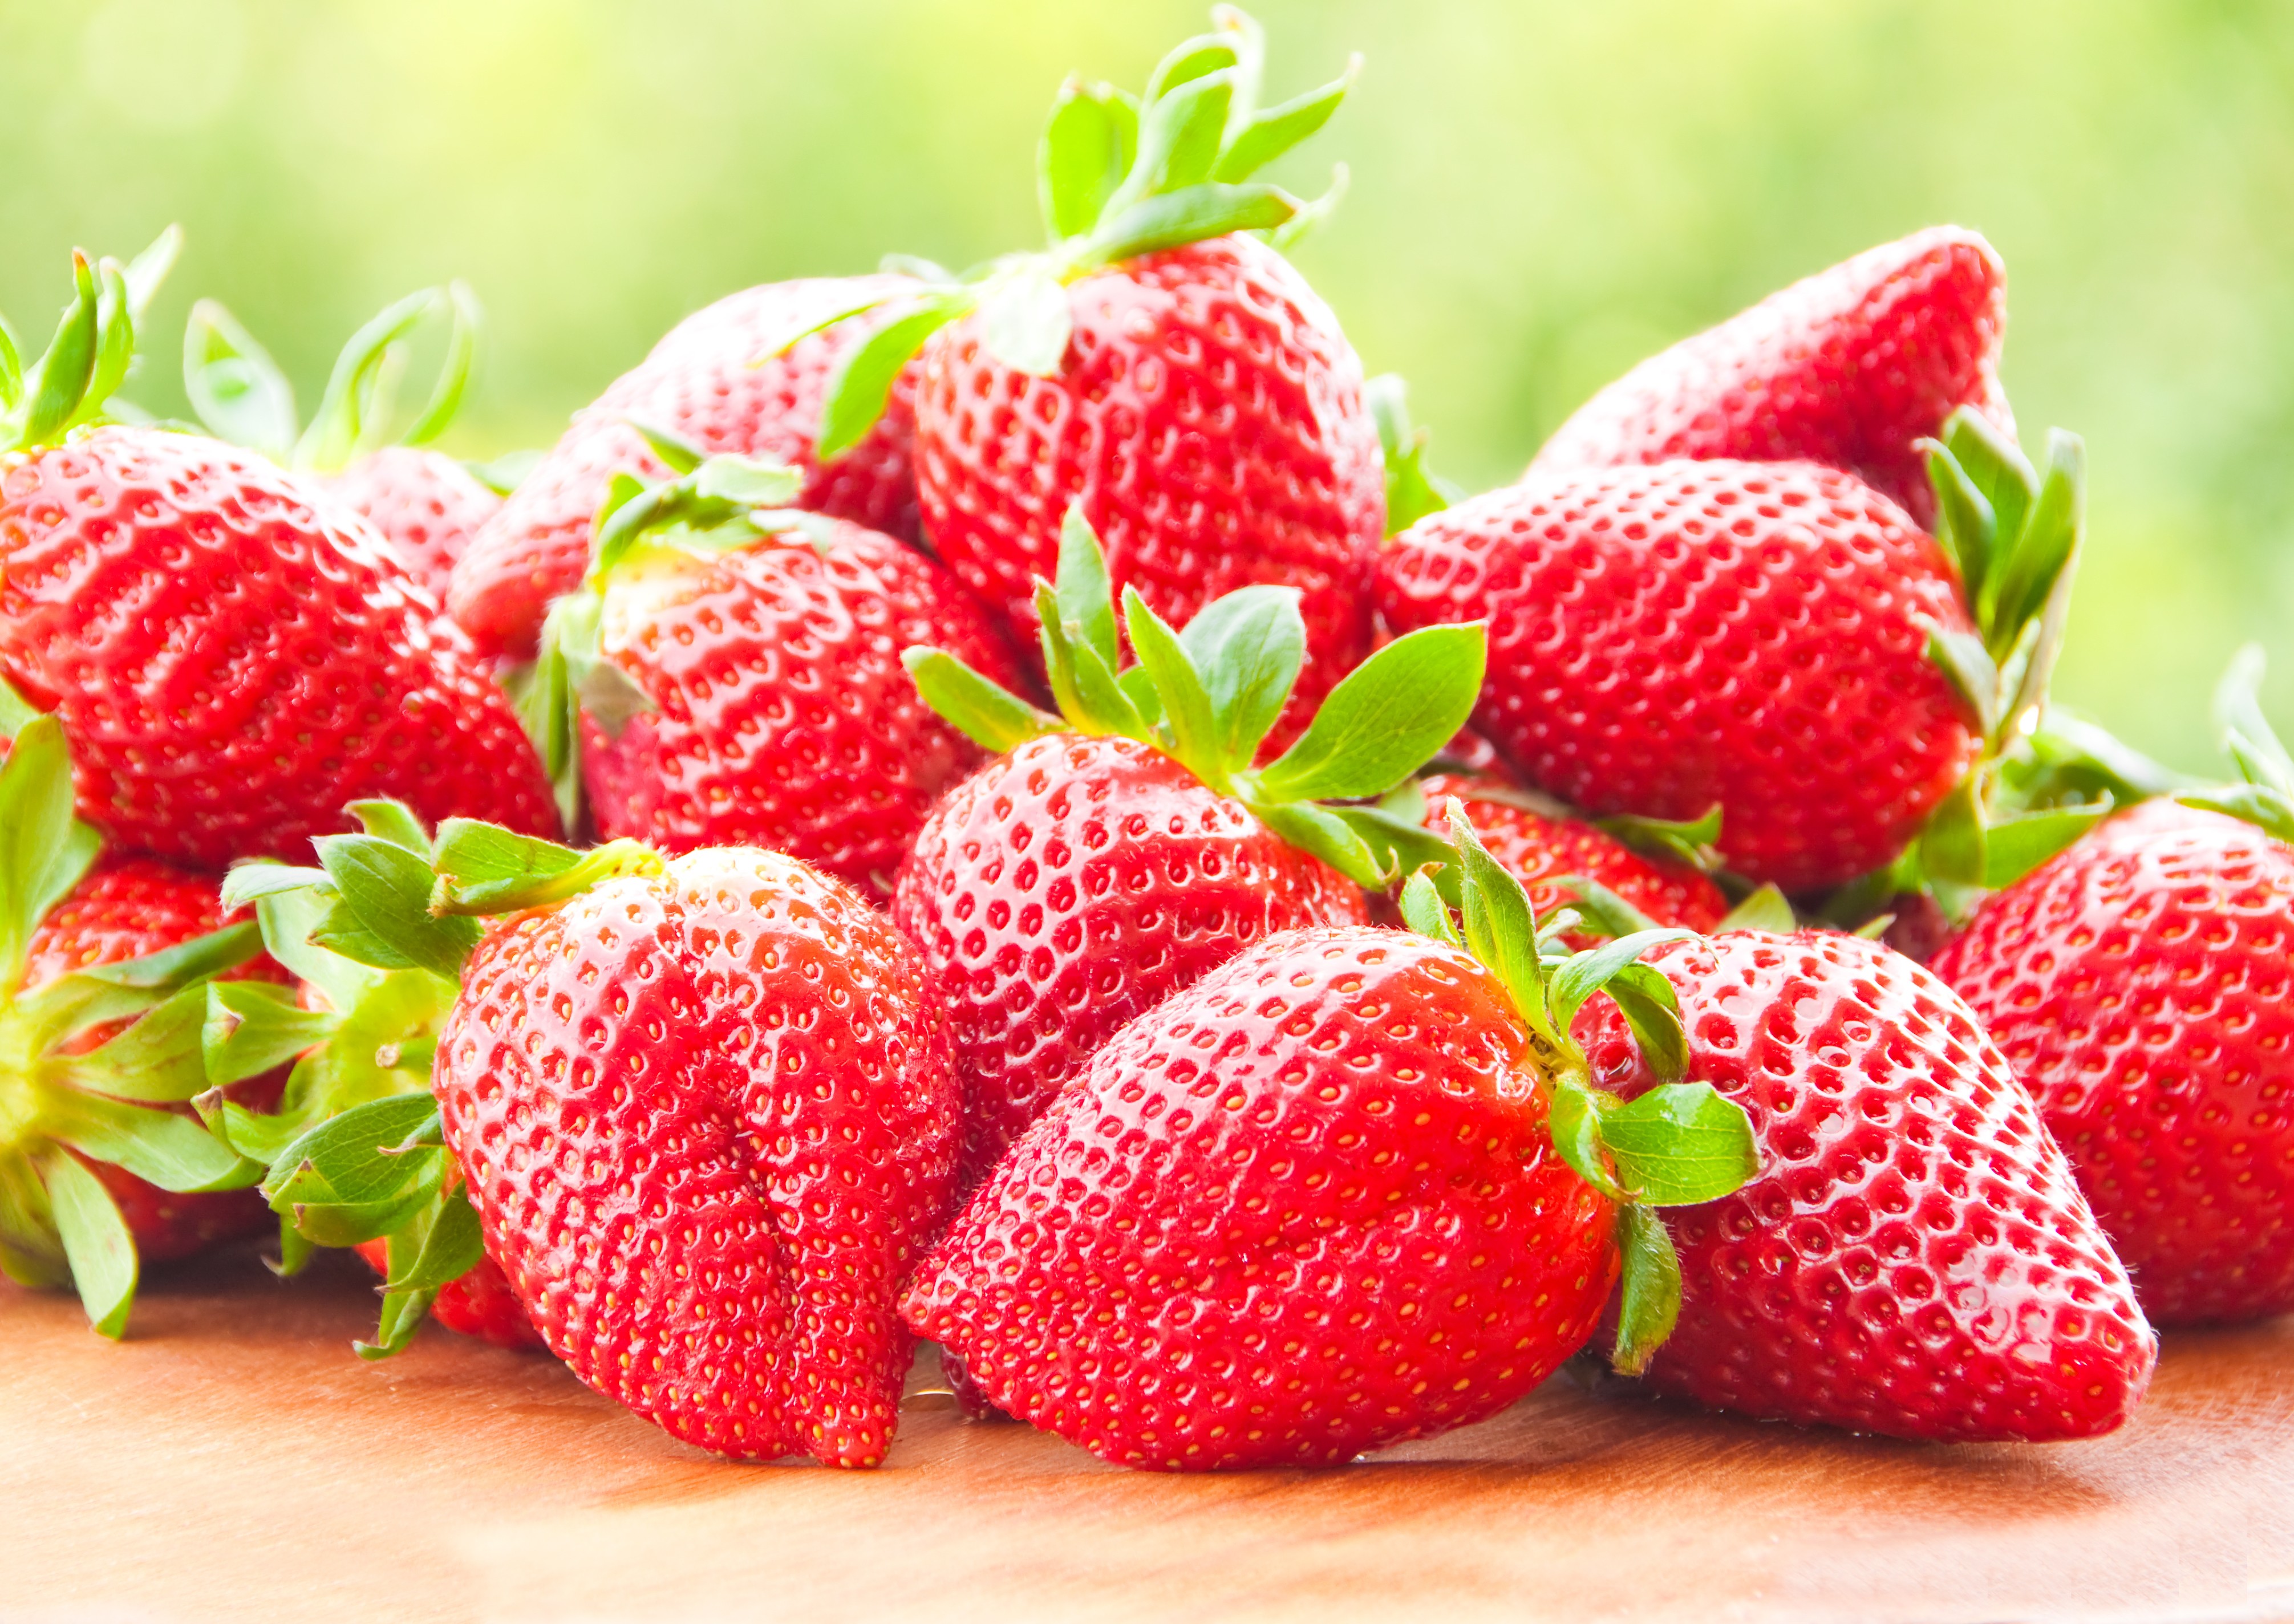 General 4022x2848 strawberries fruit food berries